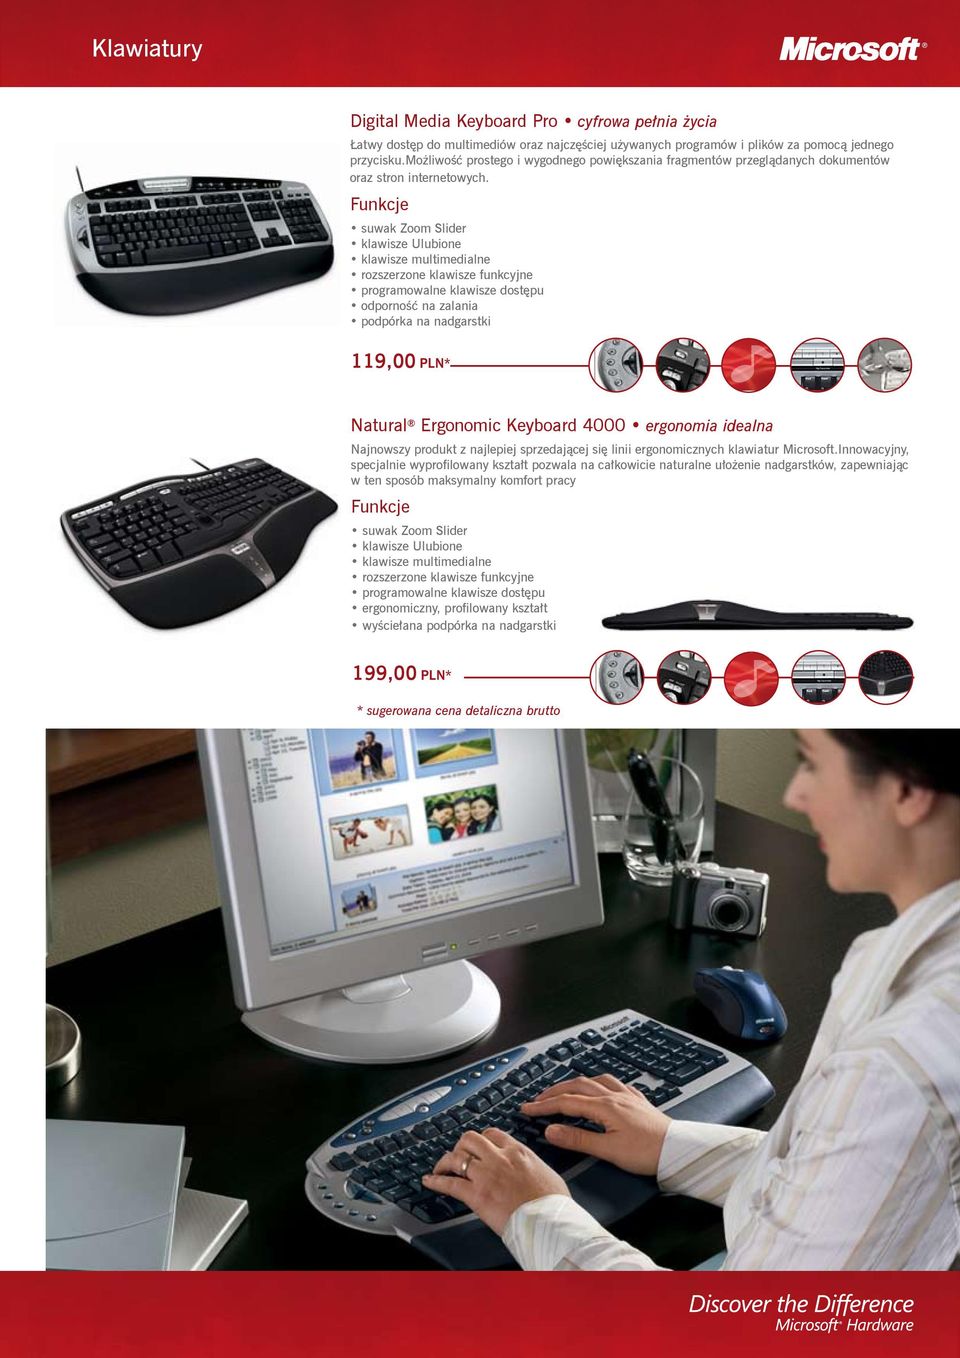 suwak Zoom Slider klawisze Ulubione rozszerzone klawisze funkcyjne programowalne klawisze dostępu odporność na zalania podpórka na nadgarstki 119,00 PLN* Natural Ergonomic Keyboard 4000 ergonomia